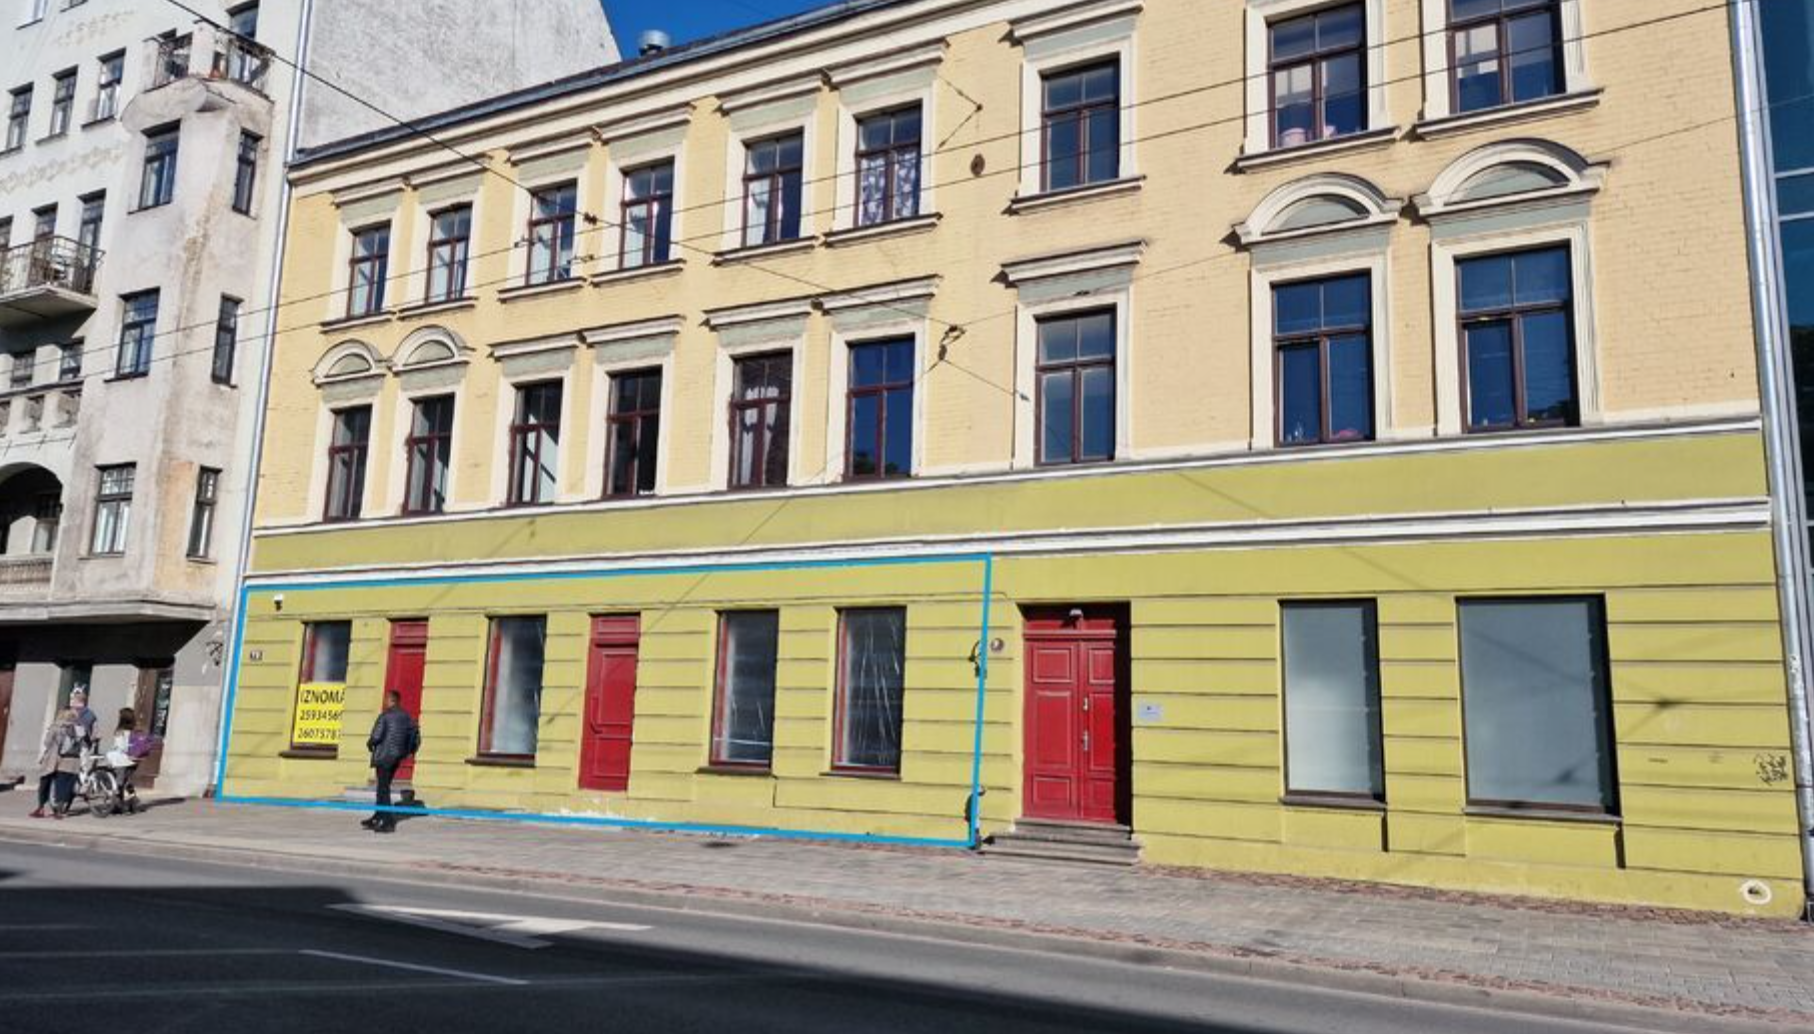 Retail premises for sale, Aleksandra Čaka street - Image 1